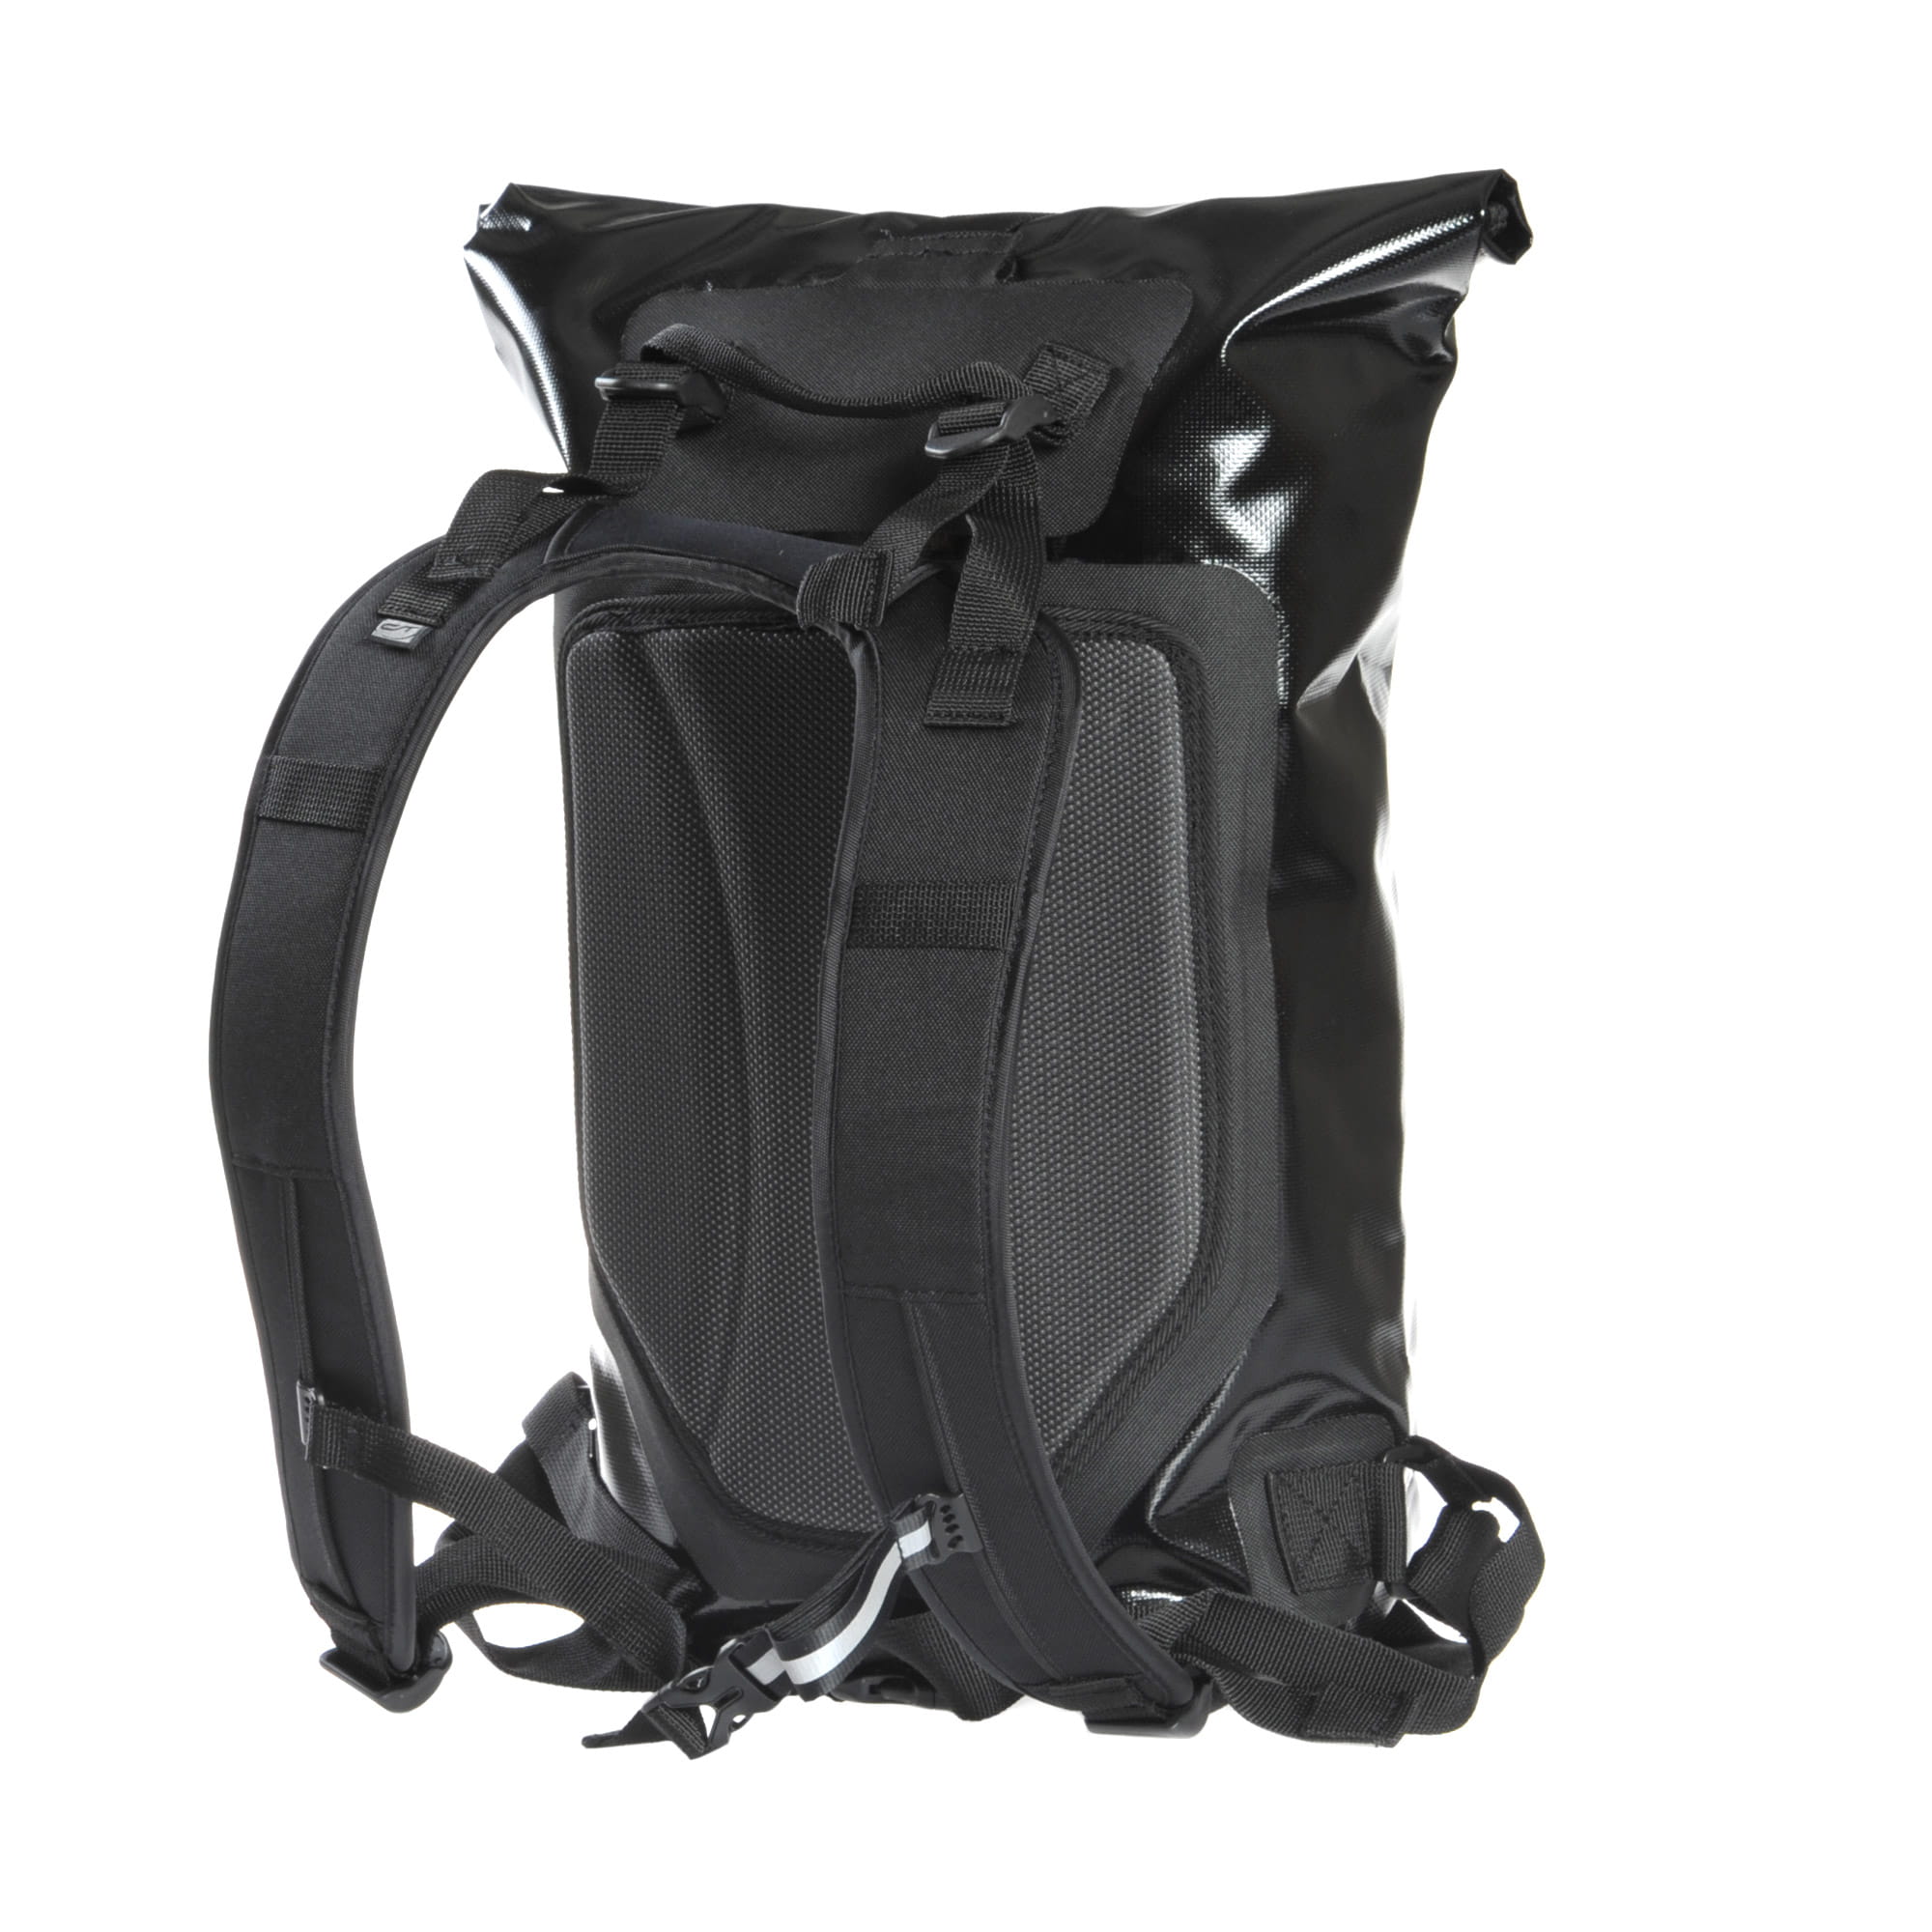 Contec Bike Backpack Waterproof 24 Liter Black